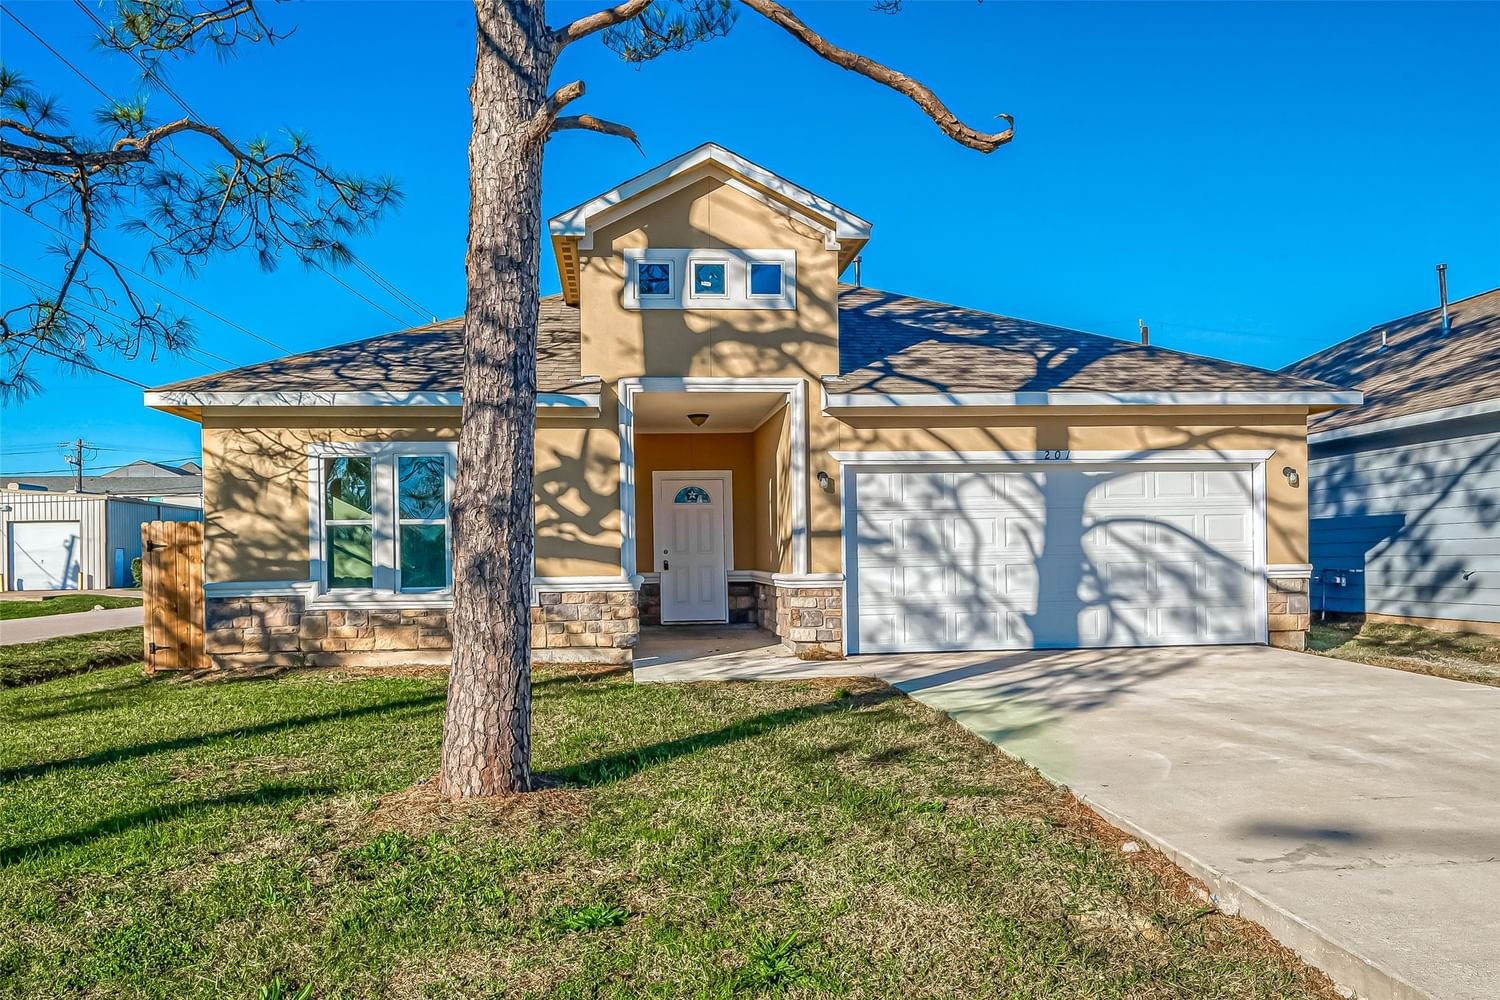 Real estate property located at 201 7th, Harris, La Porte, La Porte, TX, US